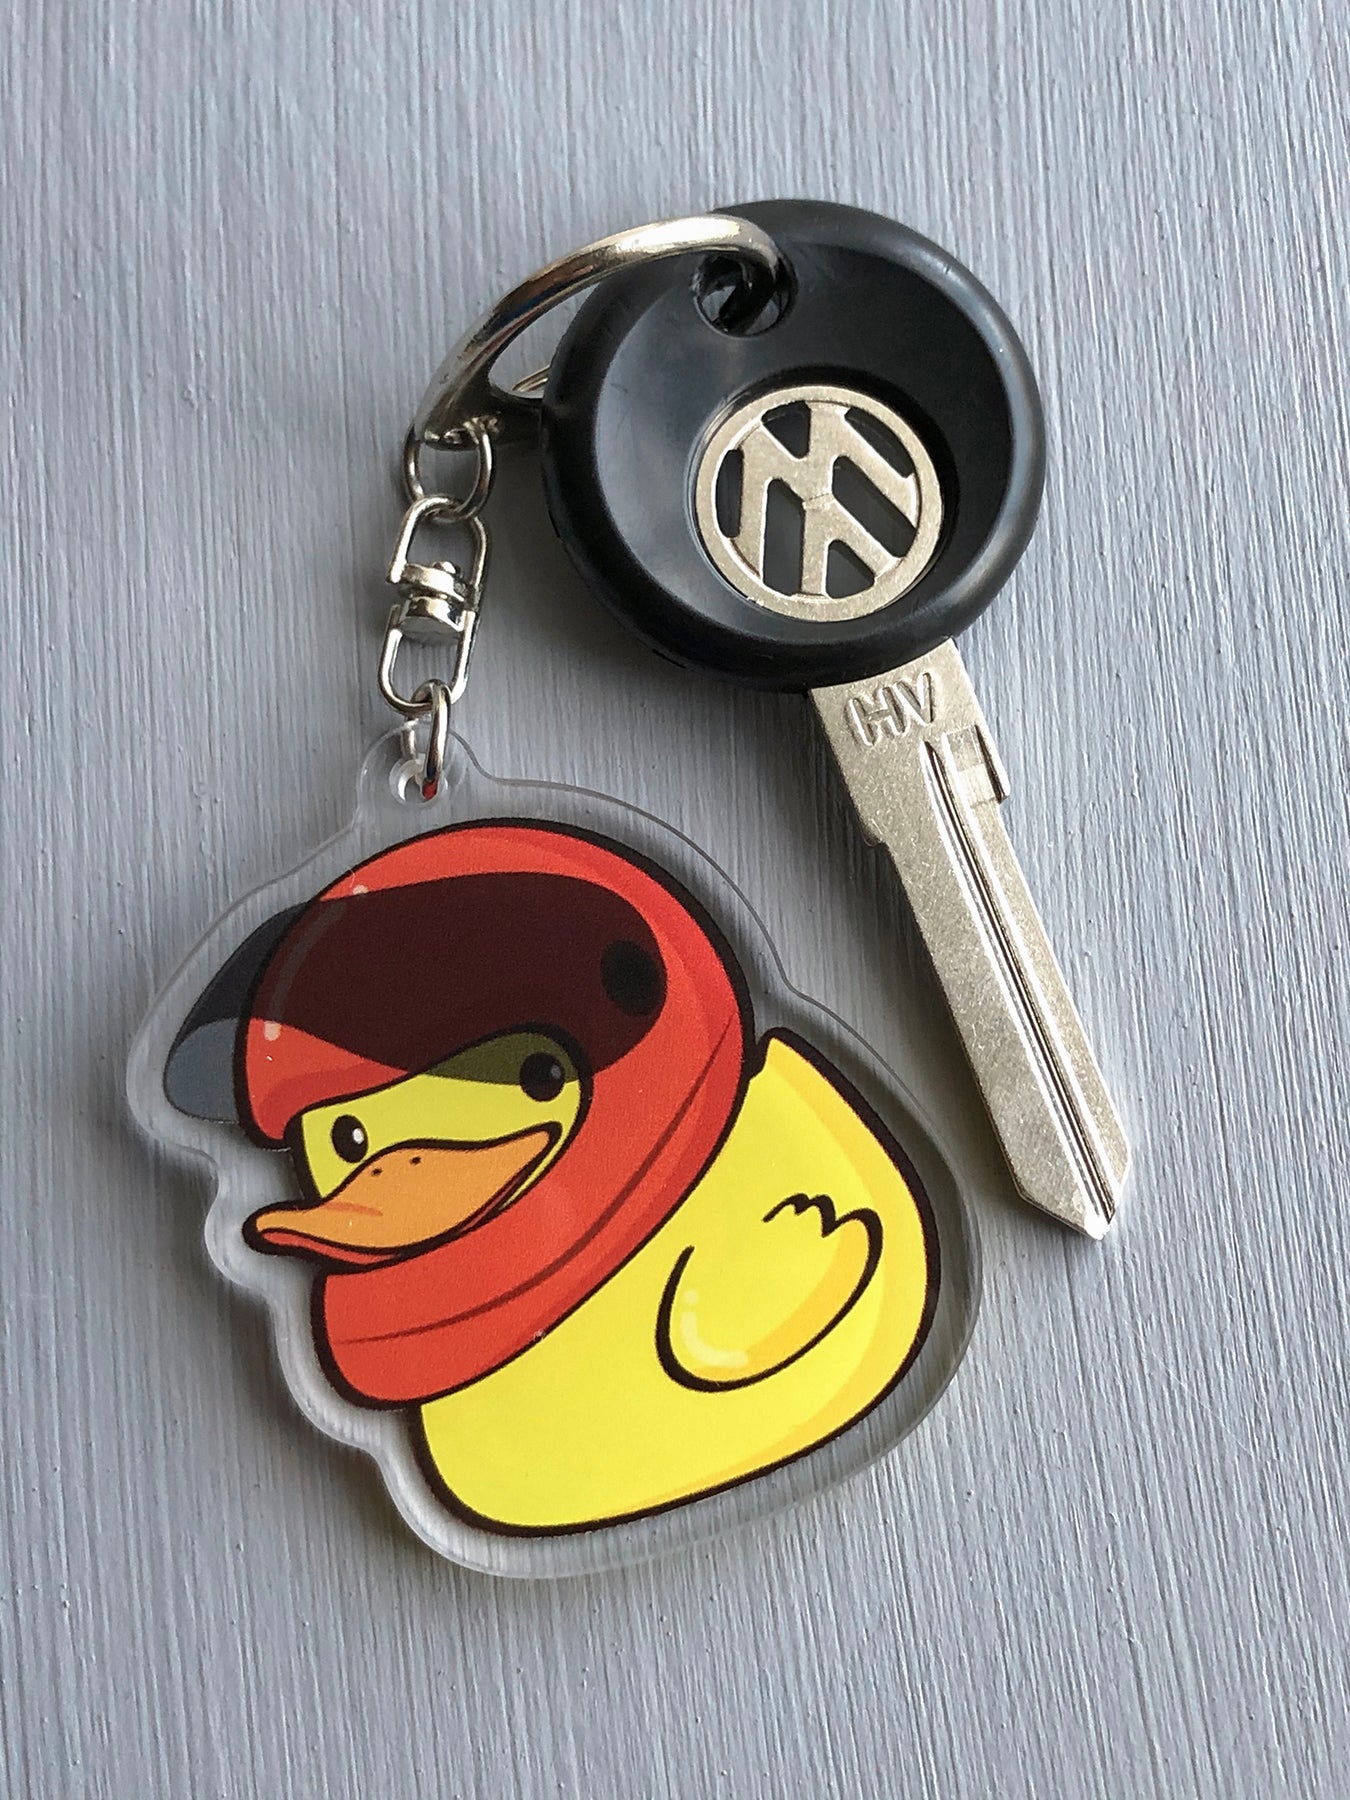 oem key with keychain